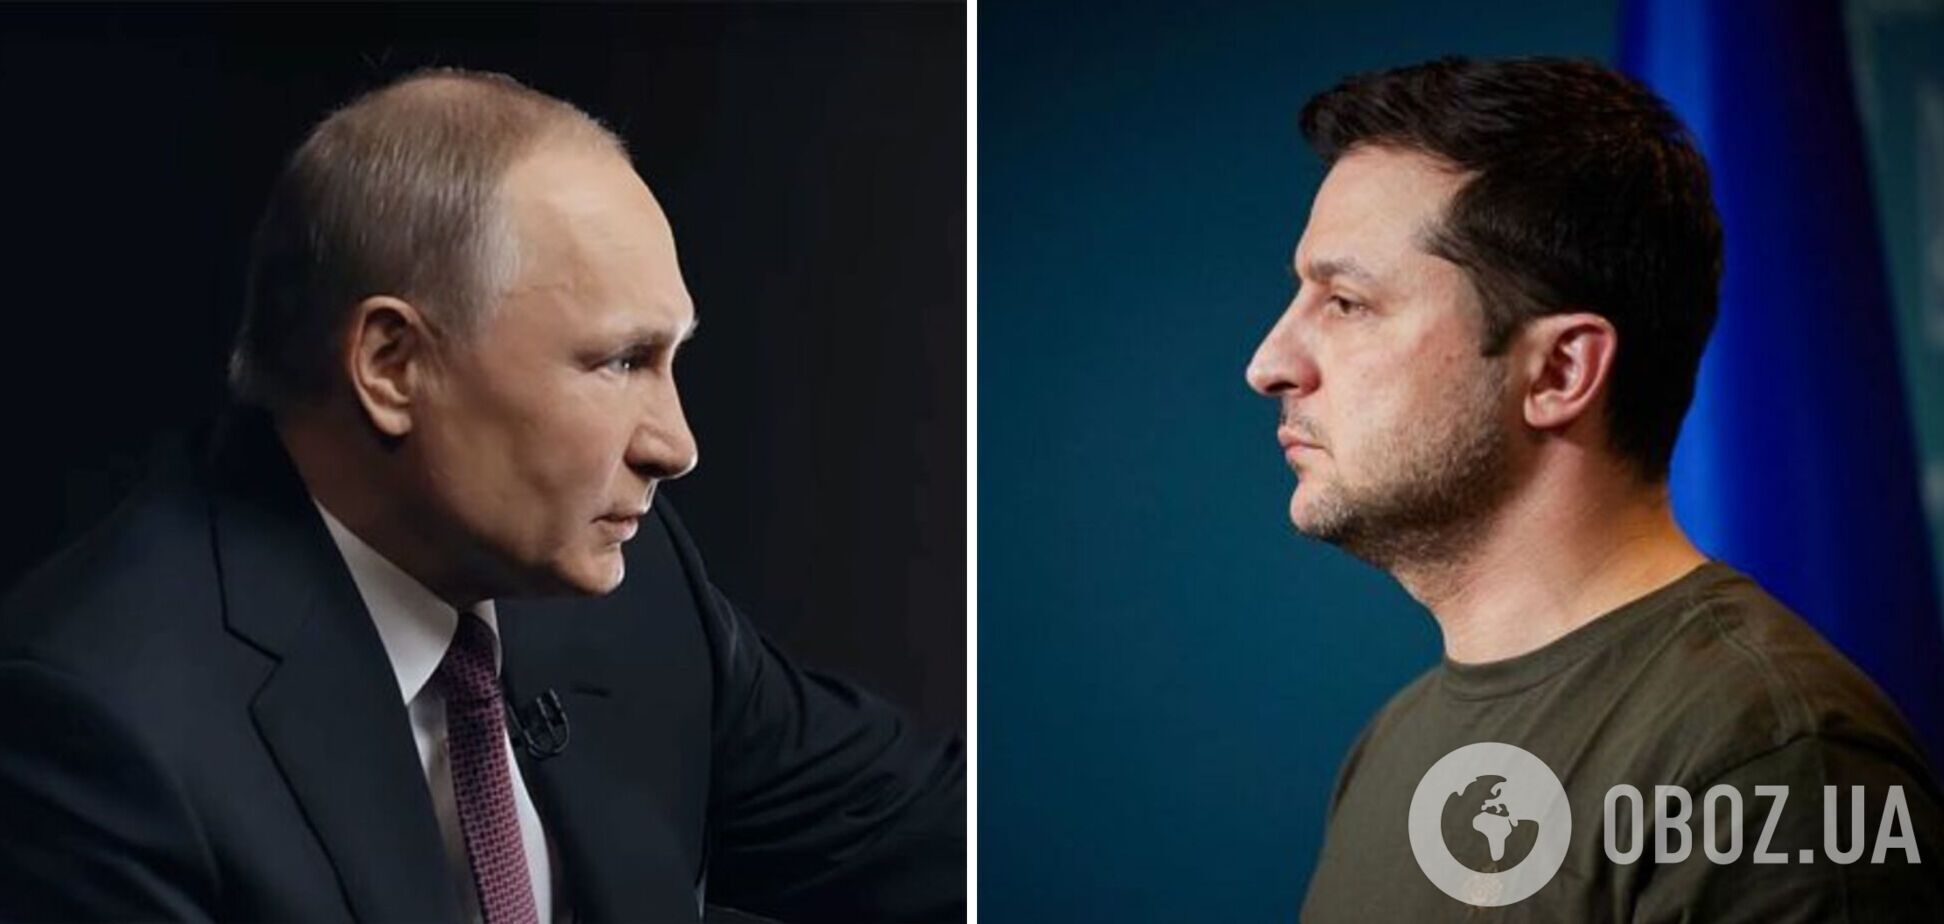 Зеленский готов встретиться с Путиным, но диктатор избегает переговоров